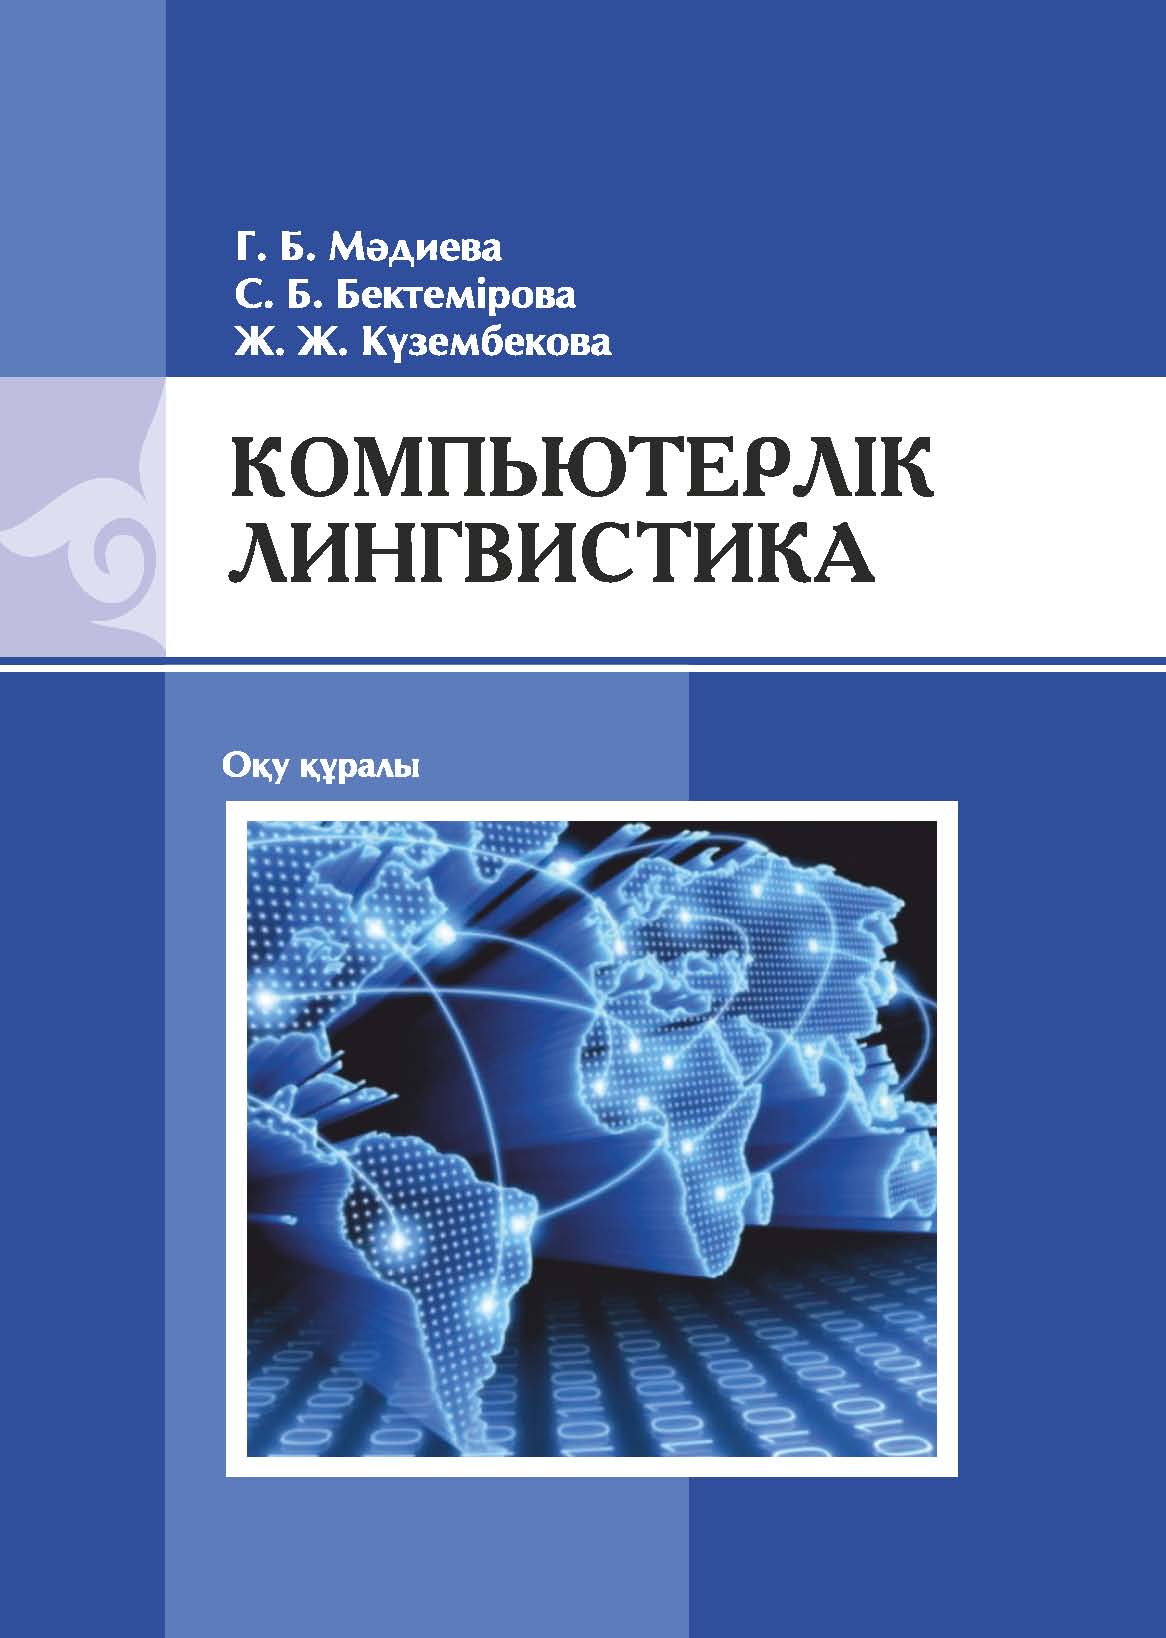 Компьютерлік лингвистика: оқу құралы – 164 б.